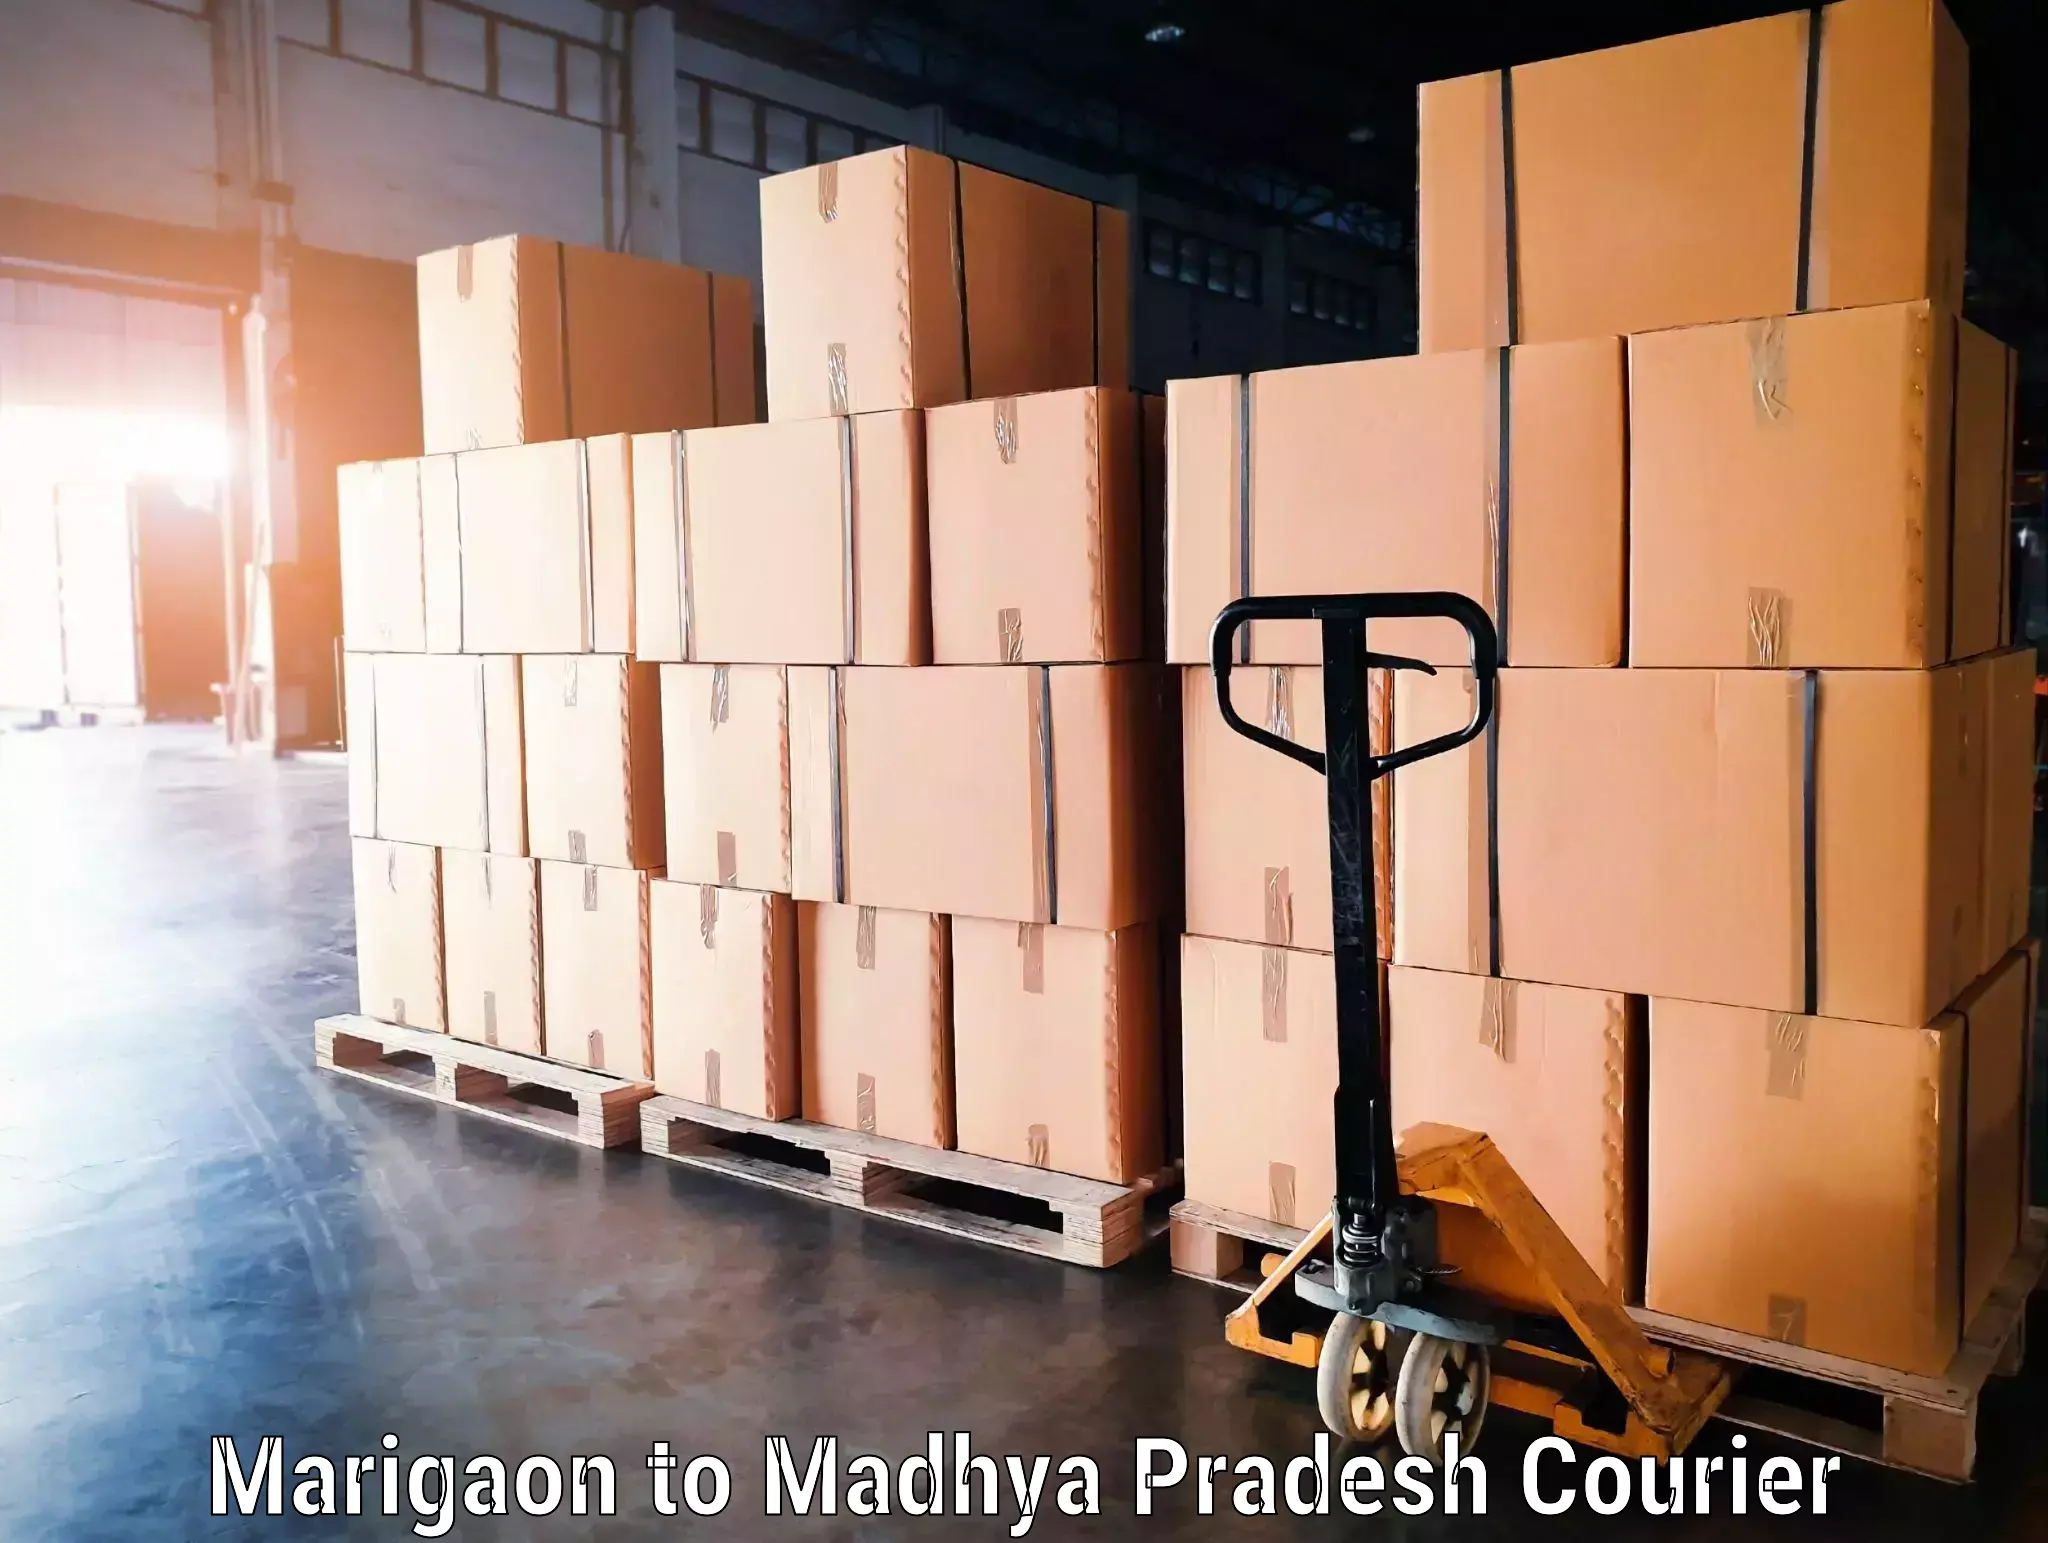 Baggage shipping service Marigaon to Khajuraho